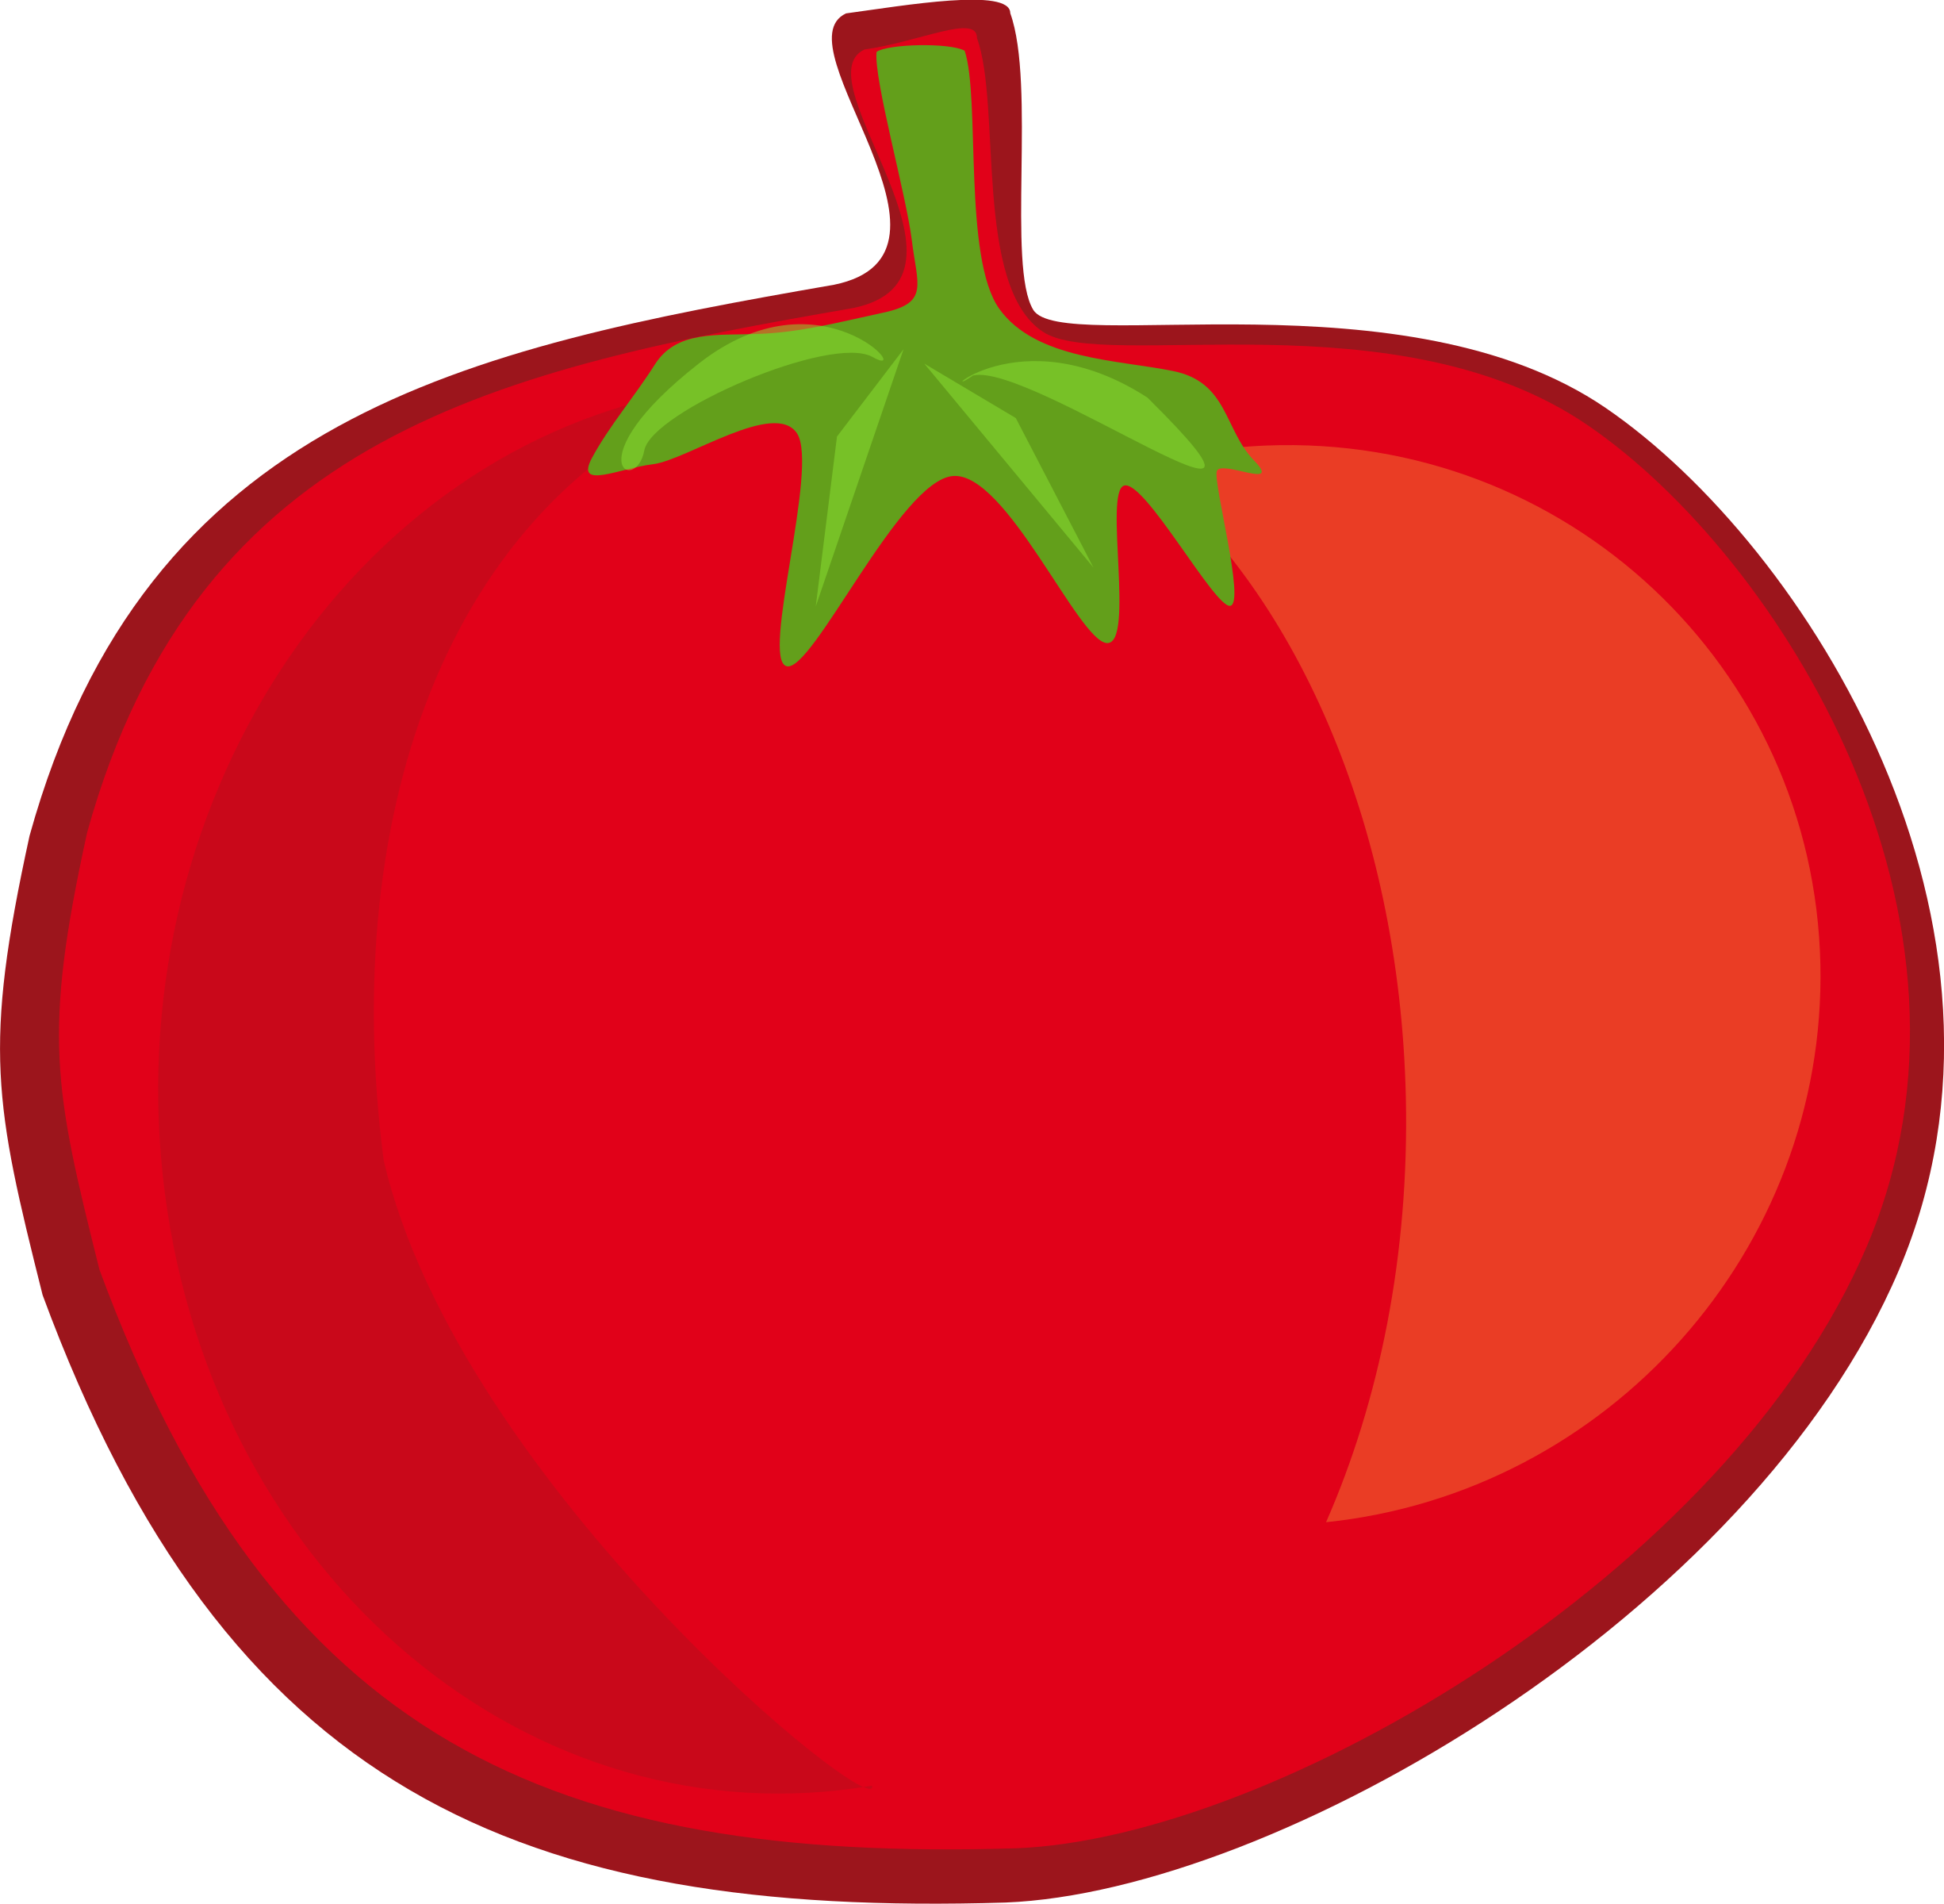 Fruit And Vegetables Drawings - Vegetable Cartoon (2451x2400)